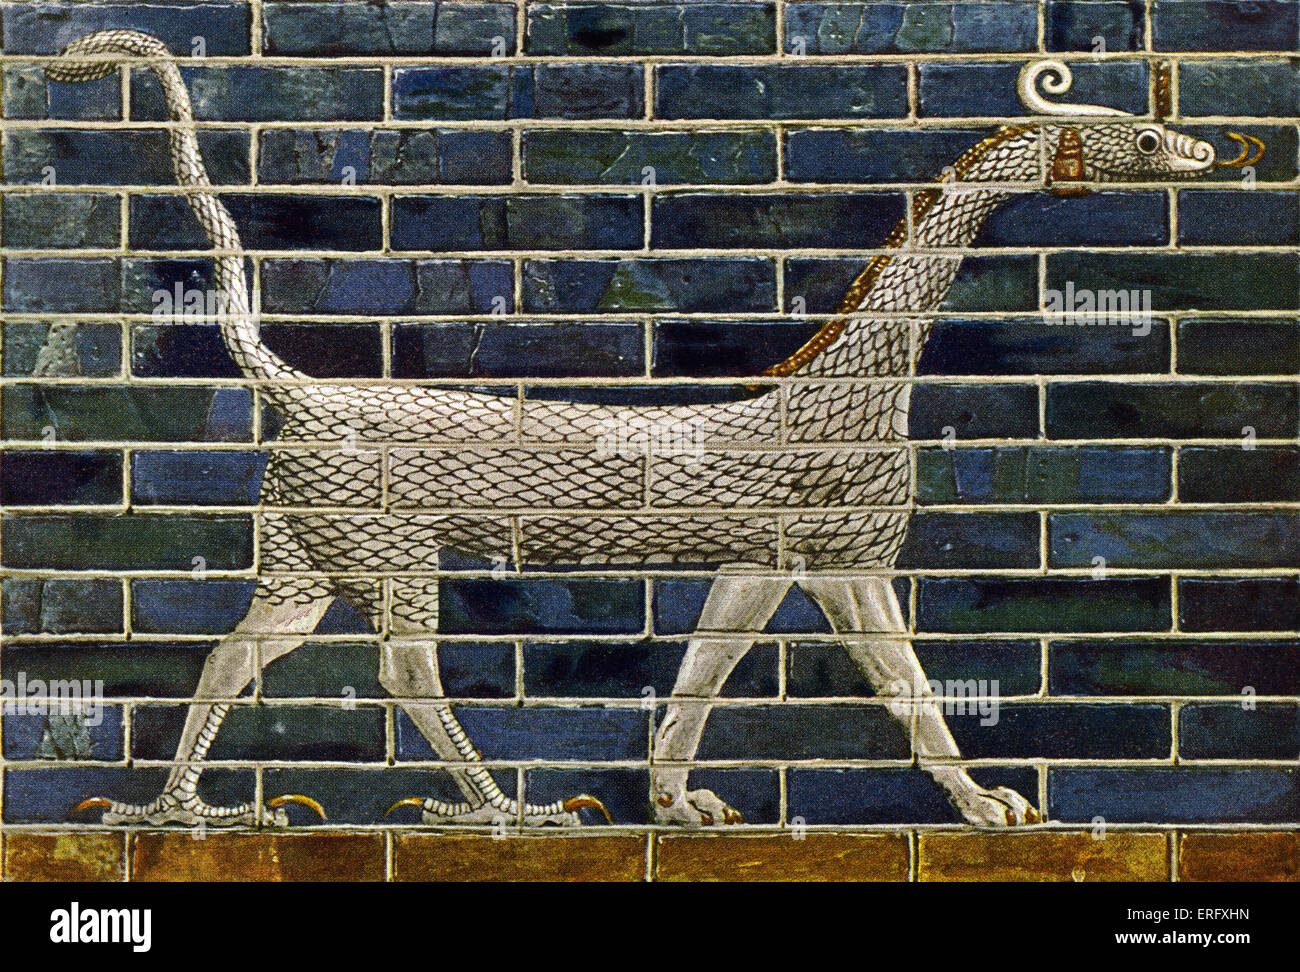 Bestia mítica / mushussu drago en la puerta de Ishtar y el camino procesional que forman parte de los muros de Babilonia. (Compuesto de Foto de stock